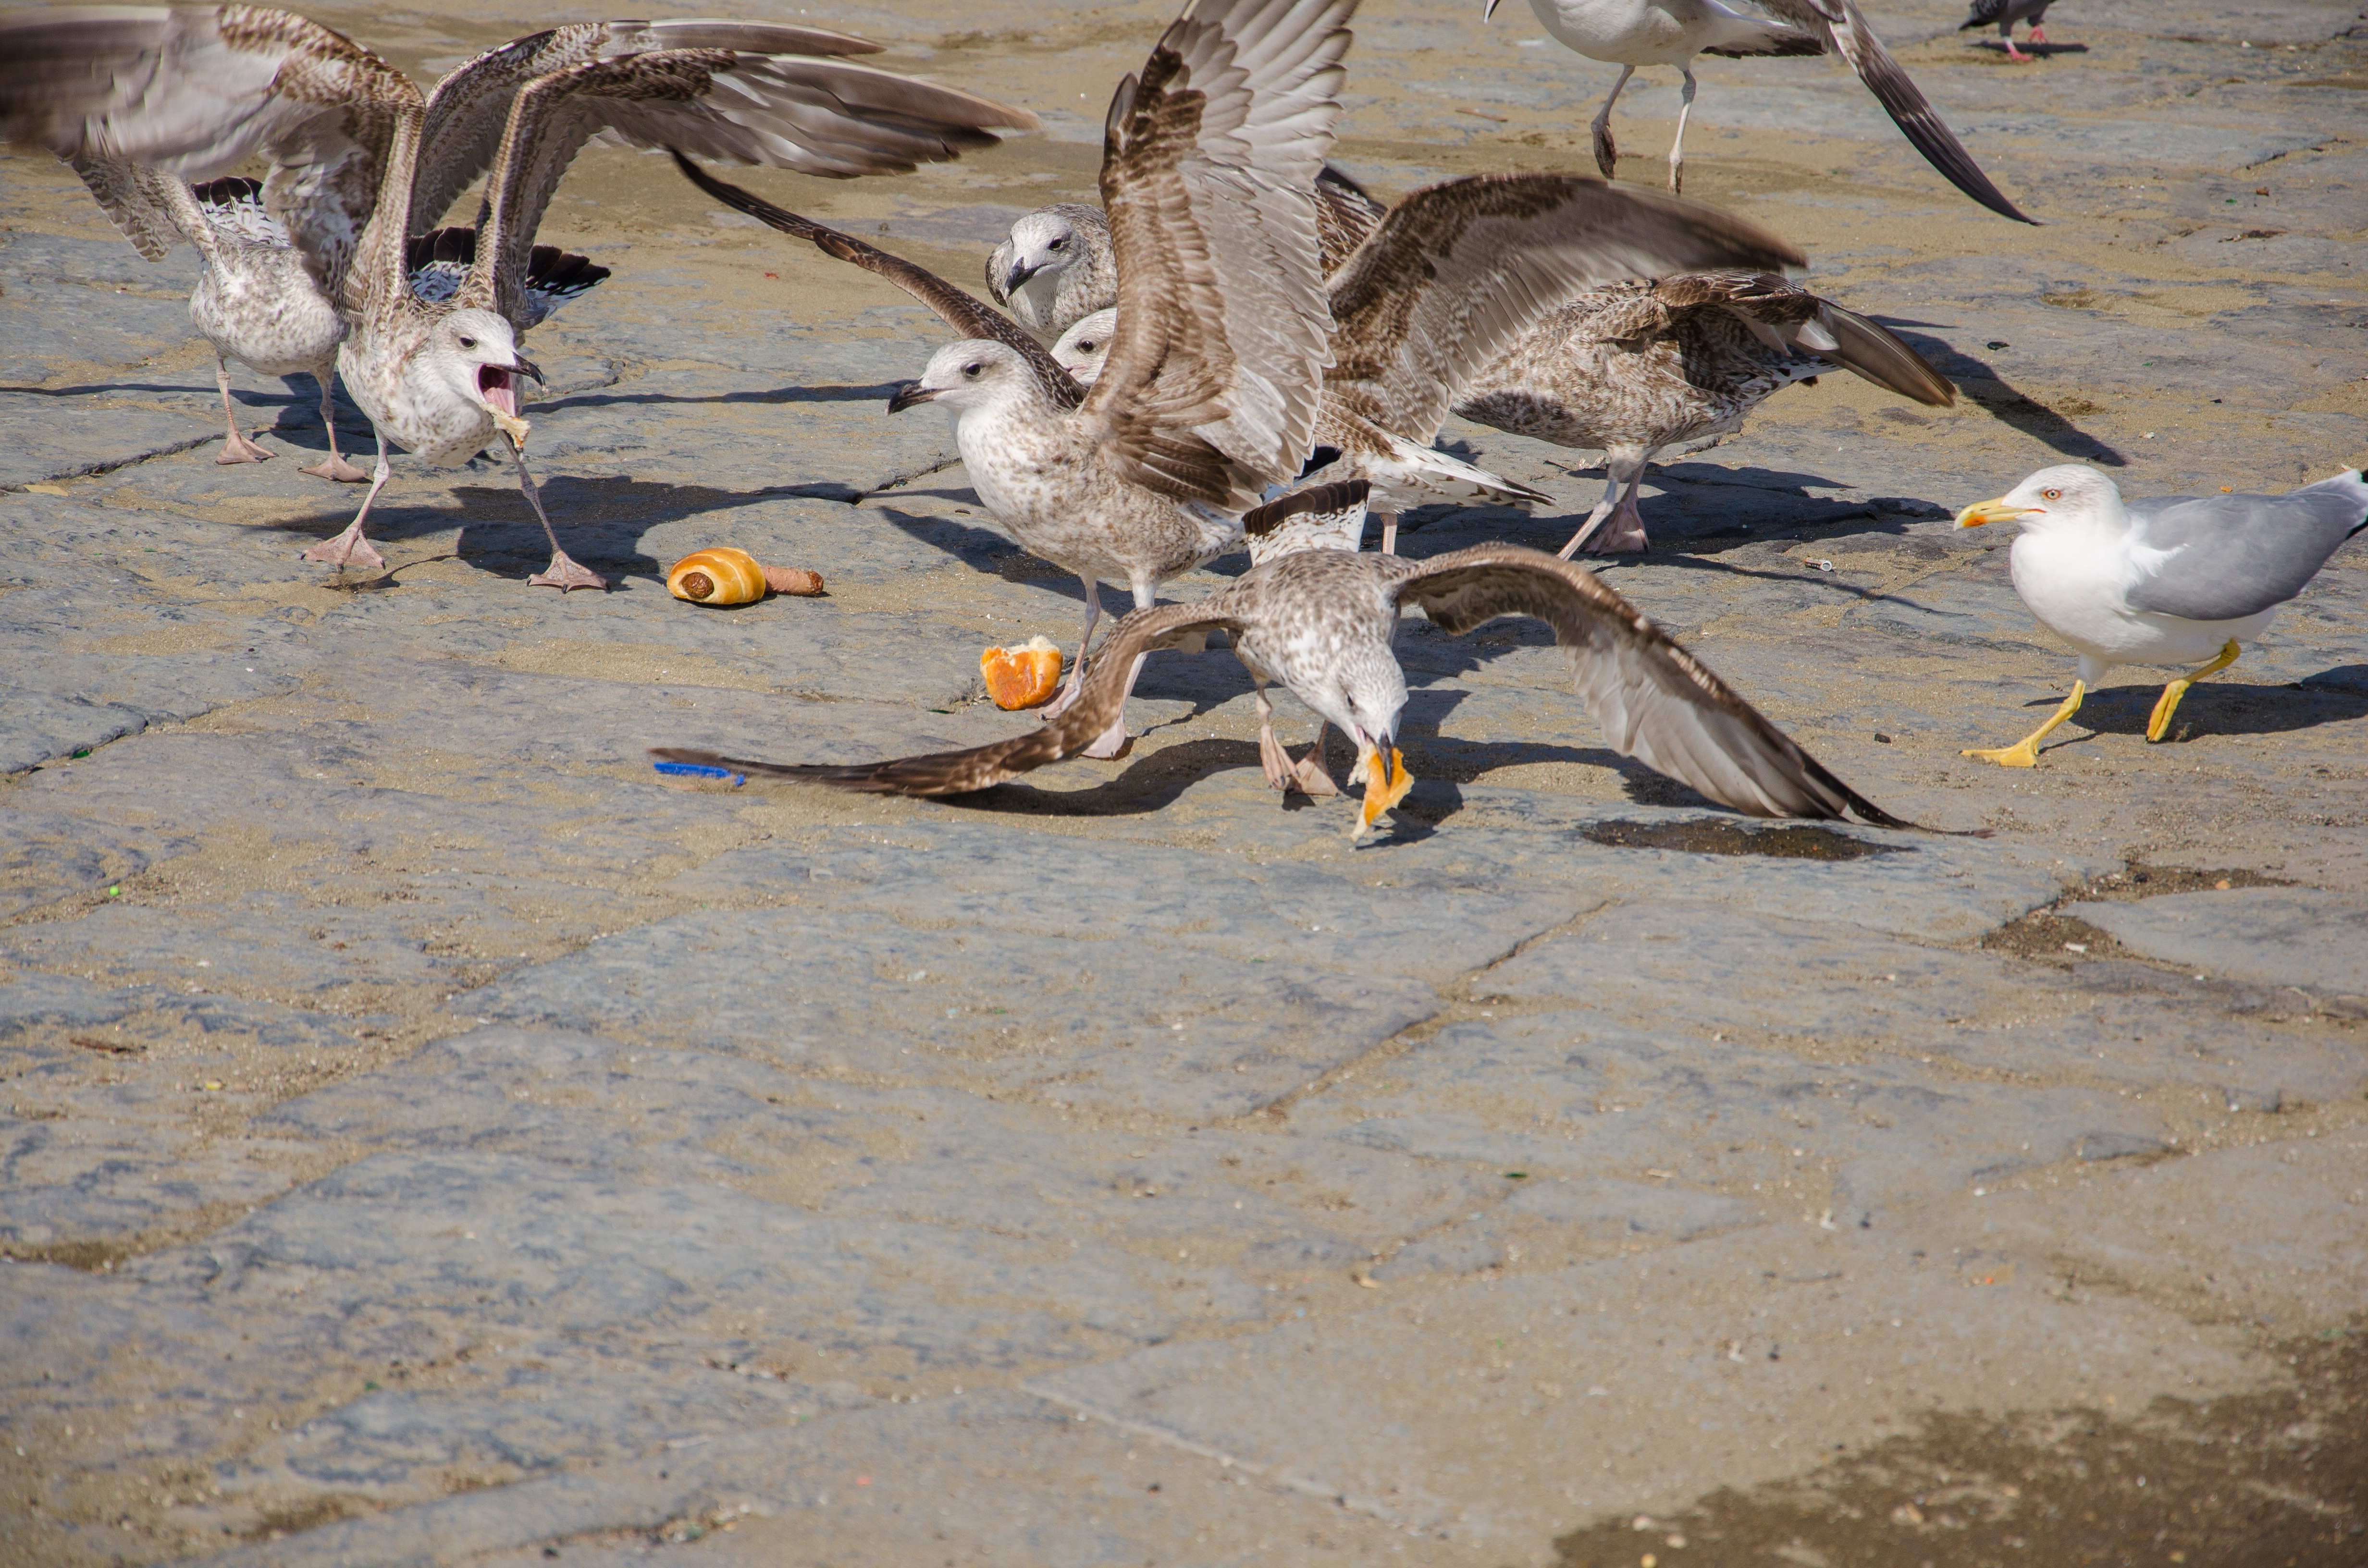 Des mouettes se disputent et mangent de la nourriture. | Source : Shutterstock